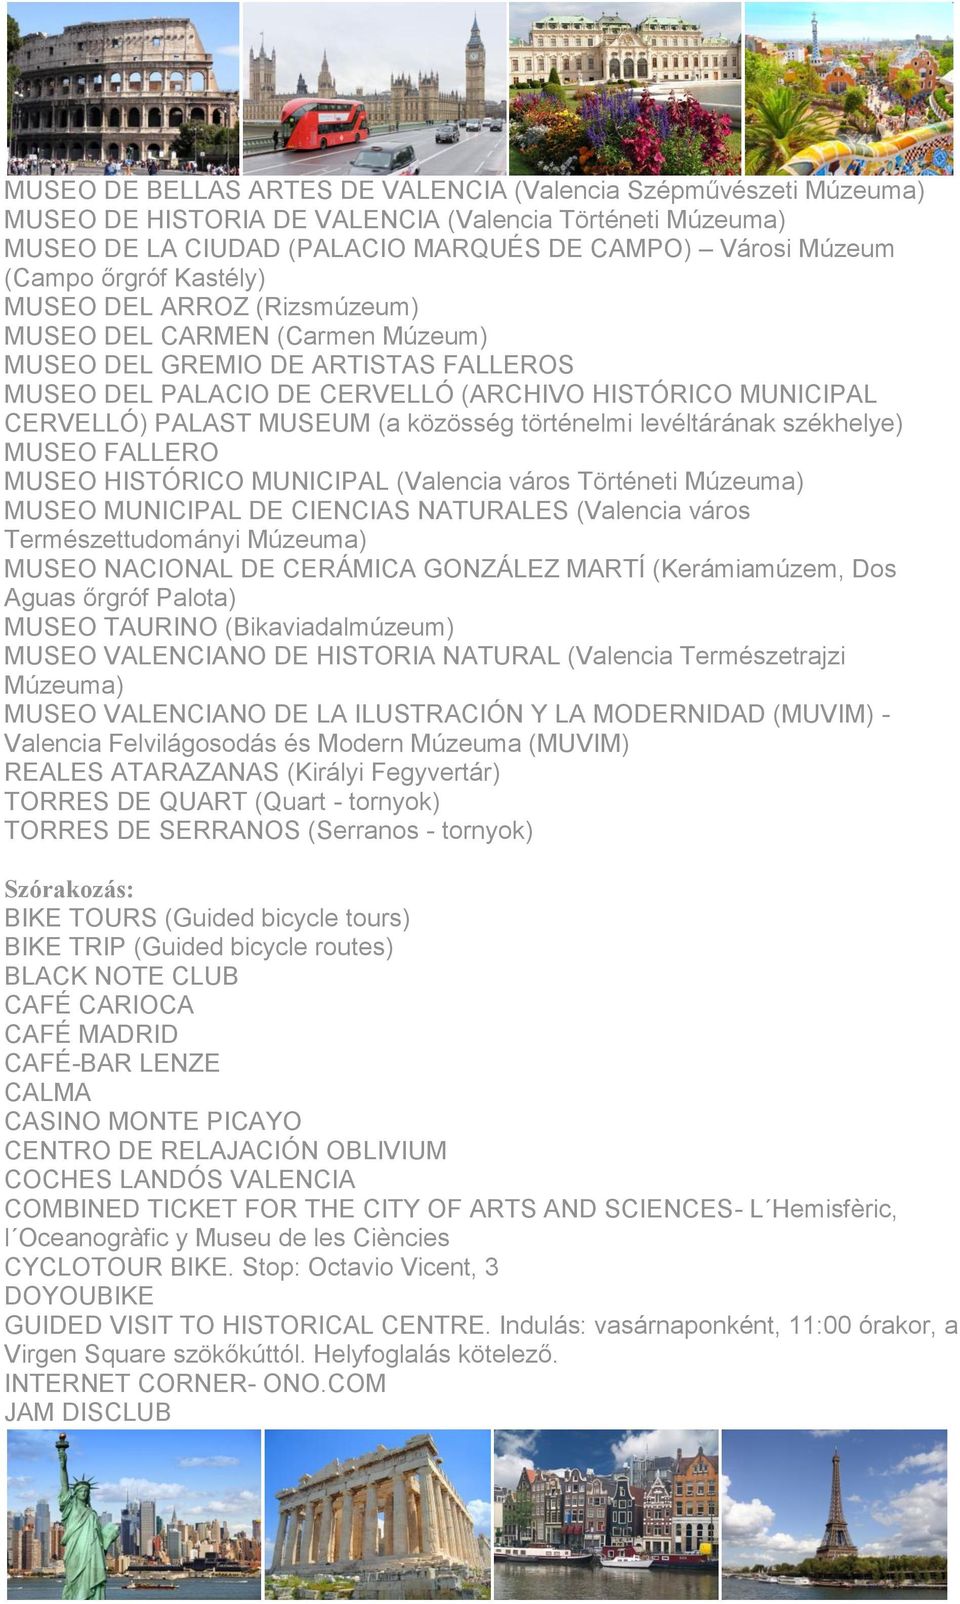 közösség történelmi levéltárának székhelye) MUSEO FALLERO MUSEO HISTÓRICO MUNICIPAL (Valencia város Történeti Múzeuma) MUSEO MUNICIPAL DE CIENCIAS NATURALES (Valencia város Természettudományi